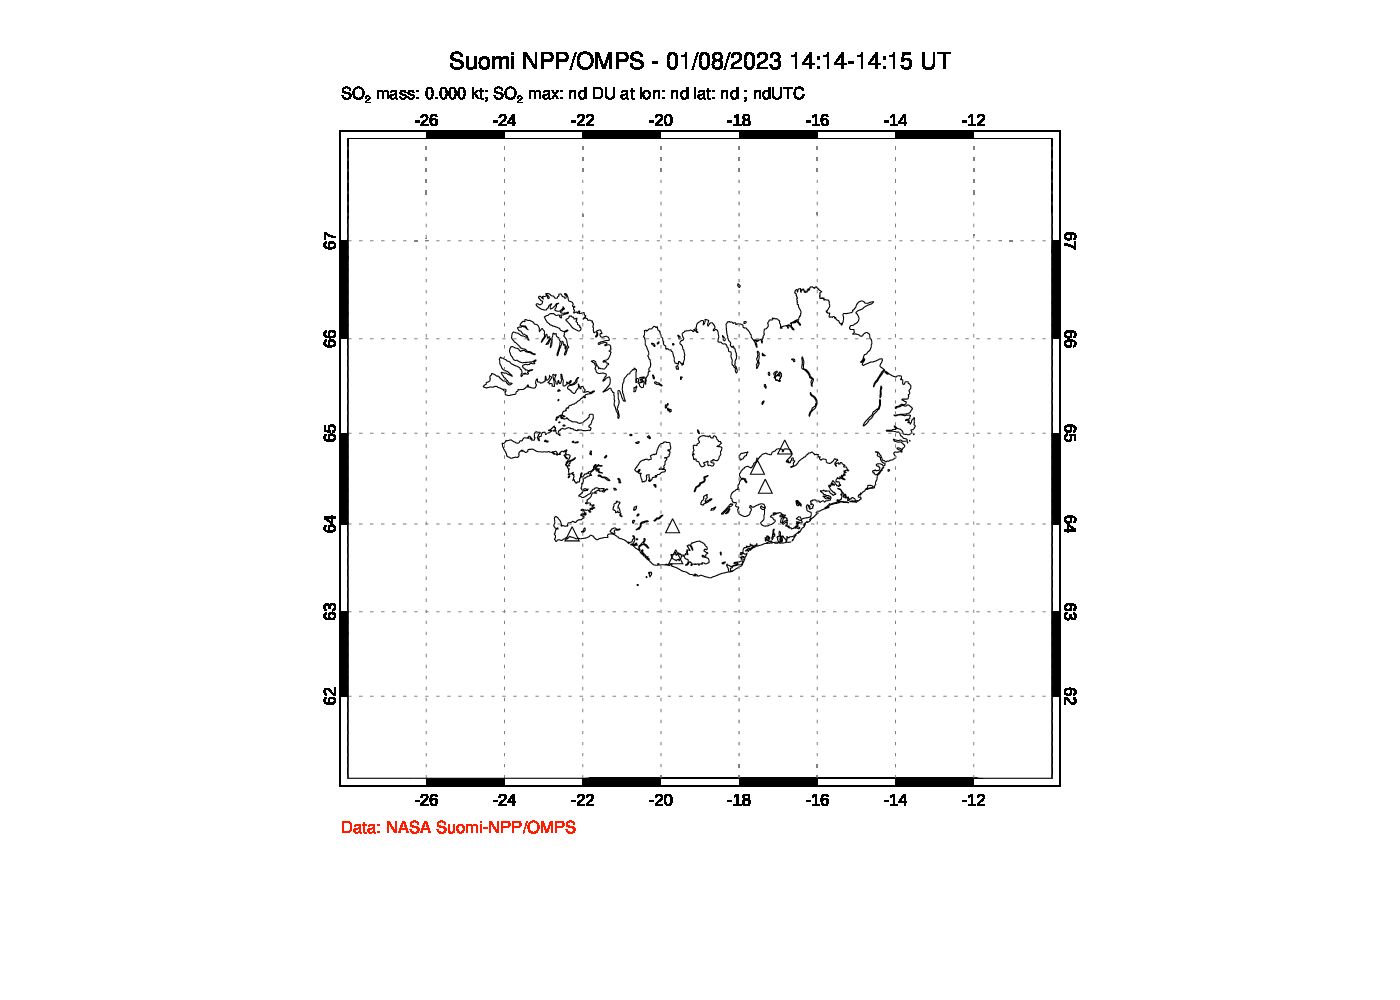 A sulfur dioxide image over Iceland on Jan 08, 2023.